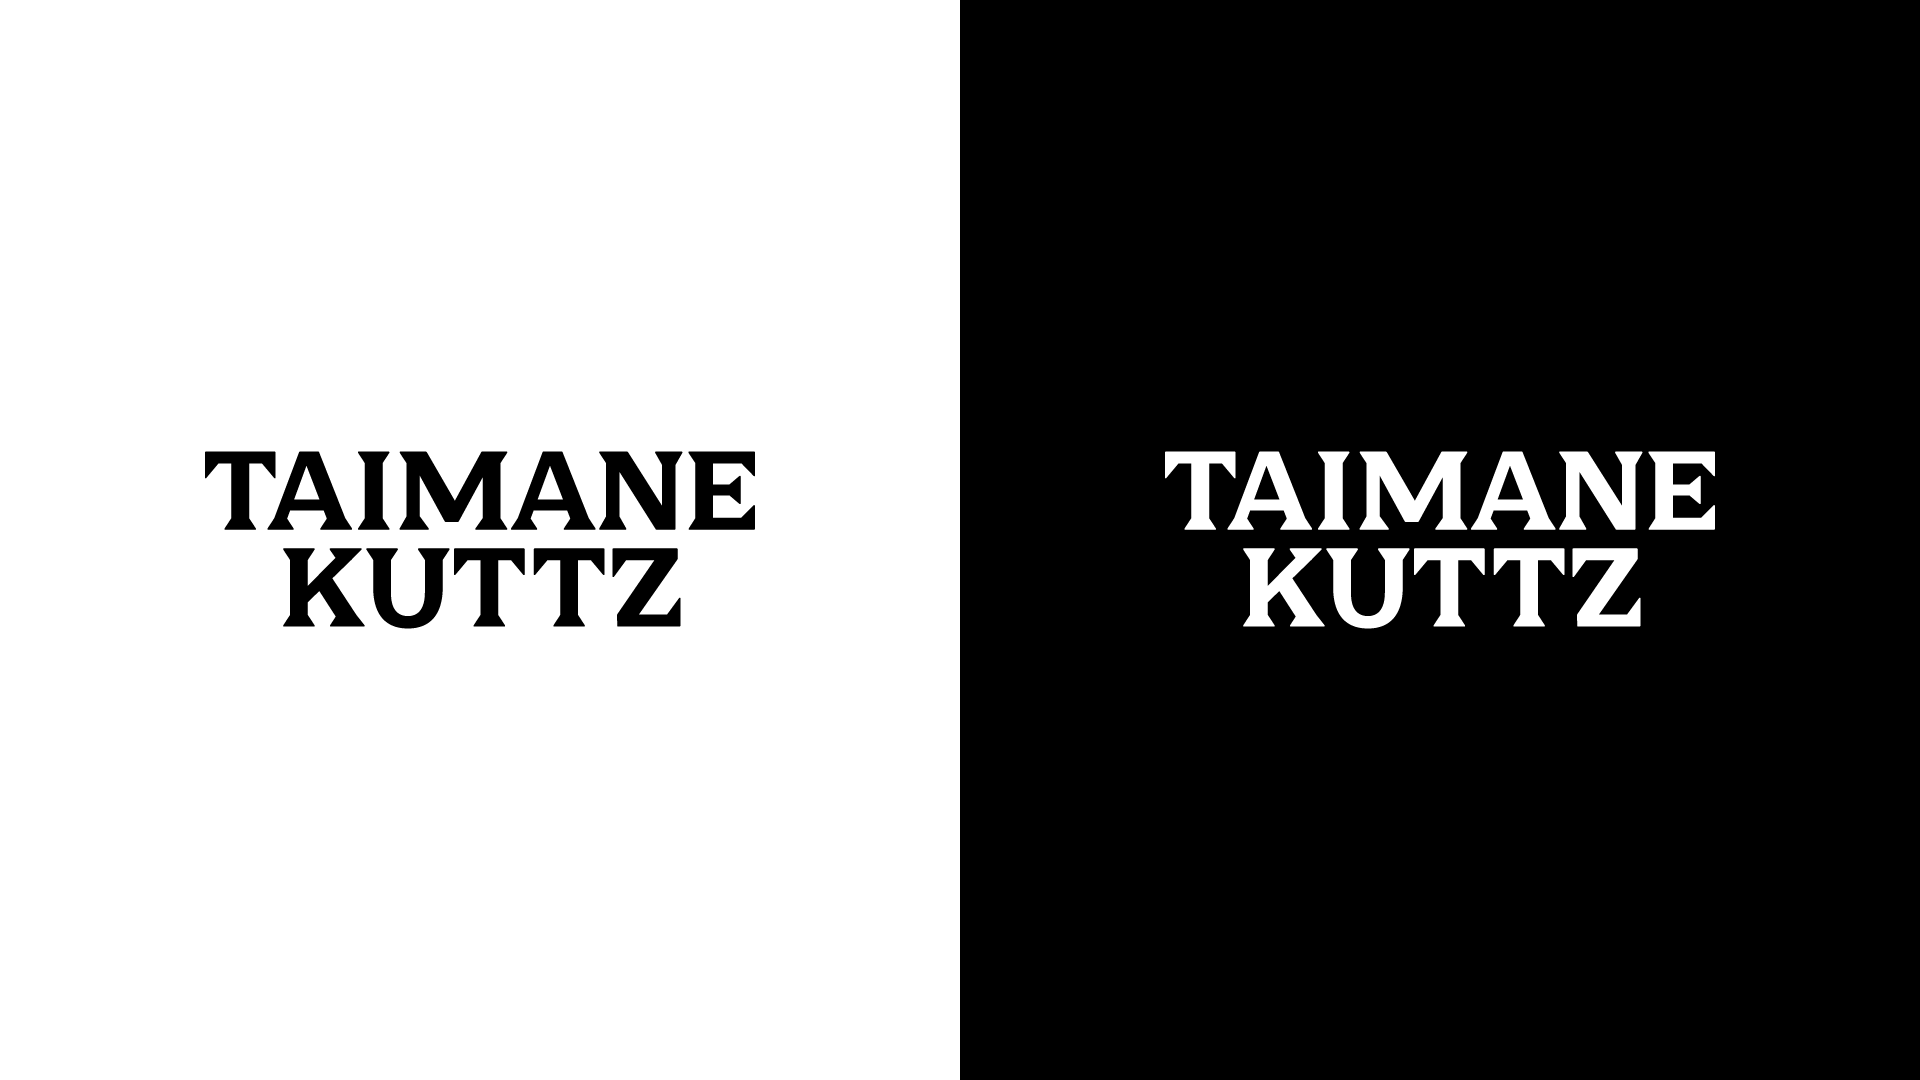 Taimane Kuttz